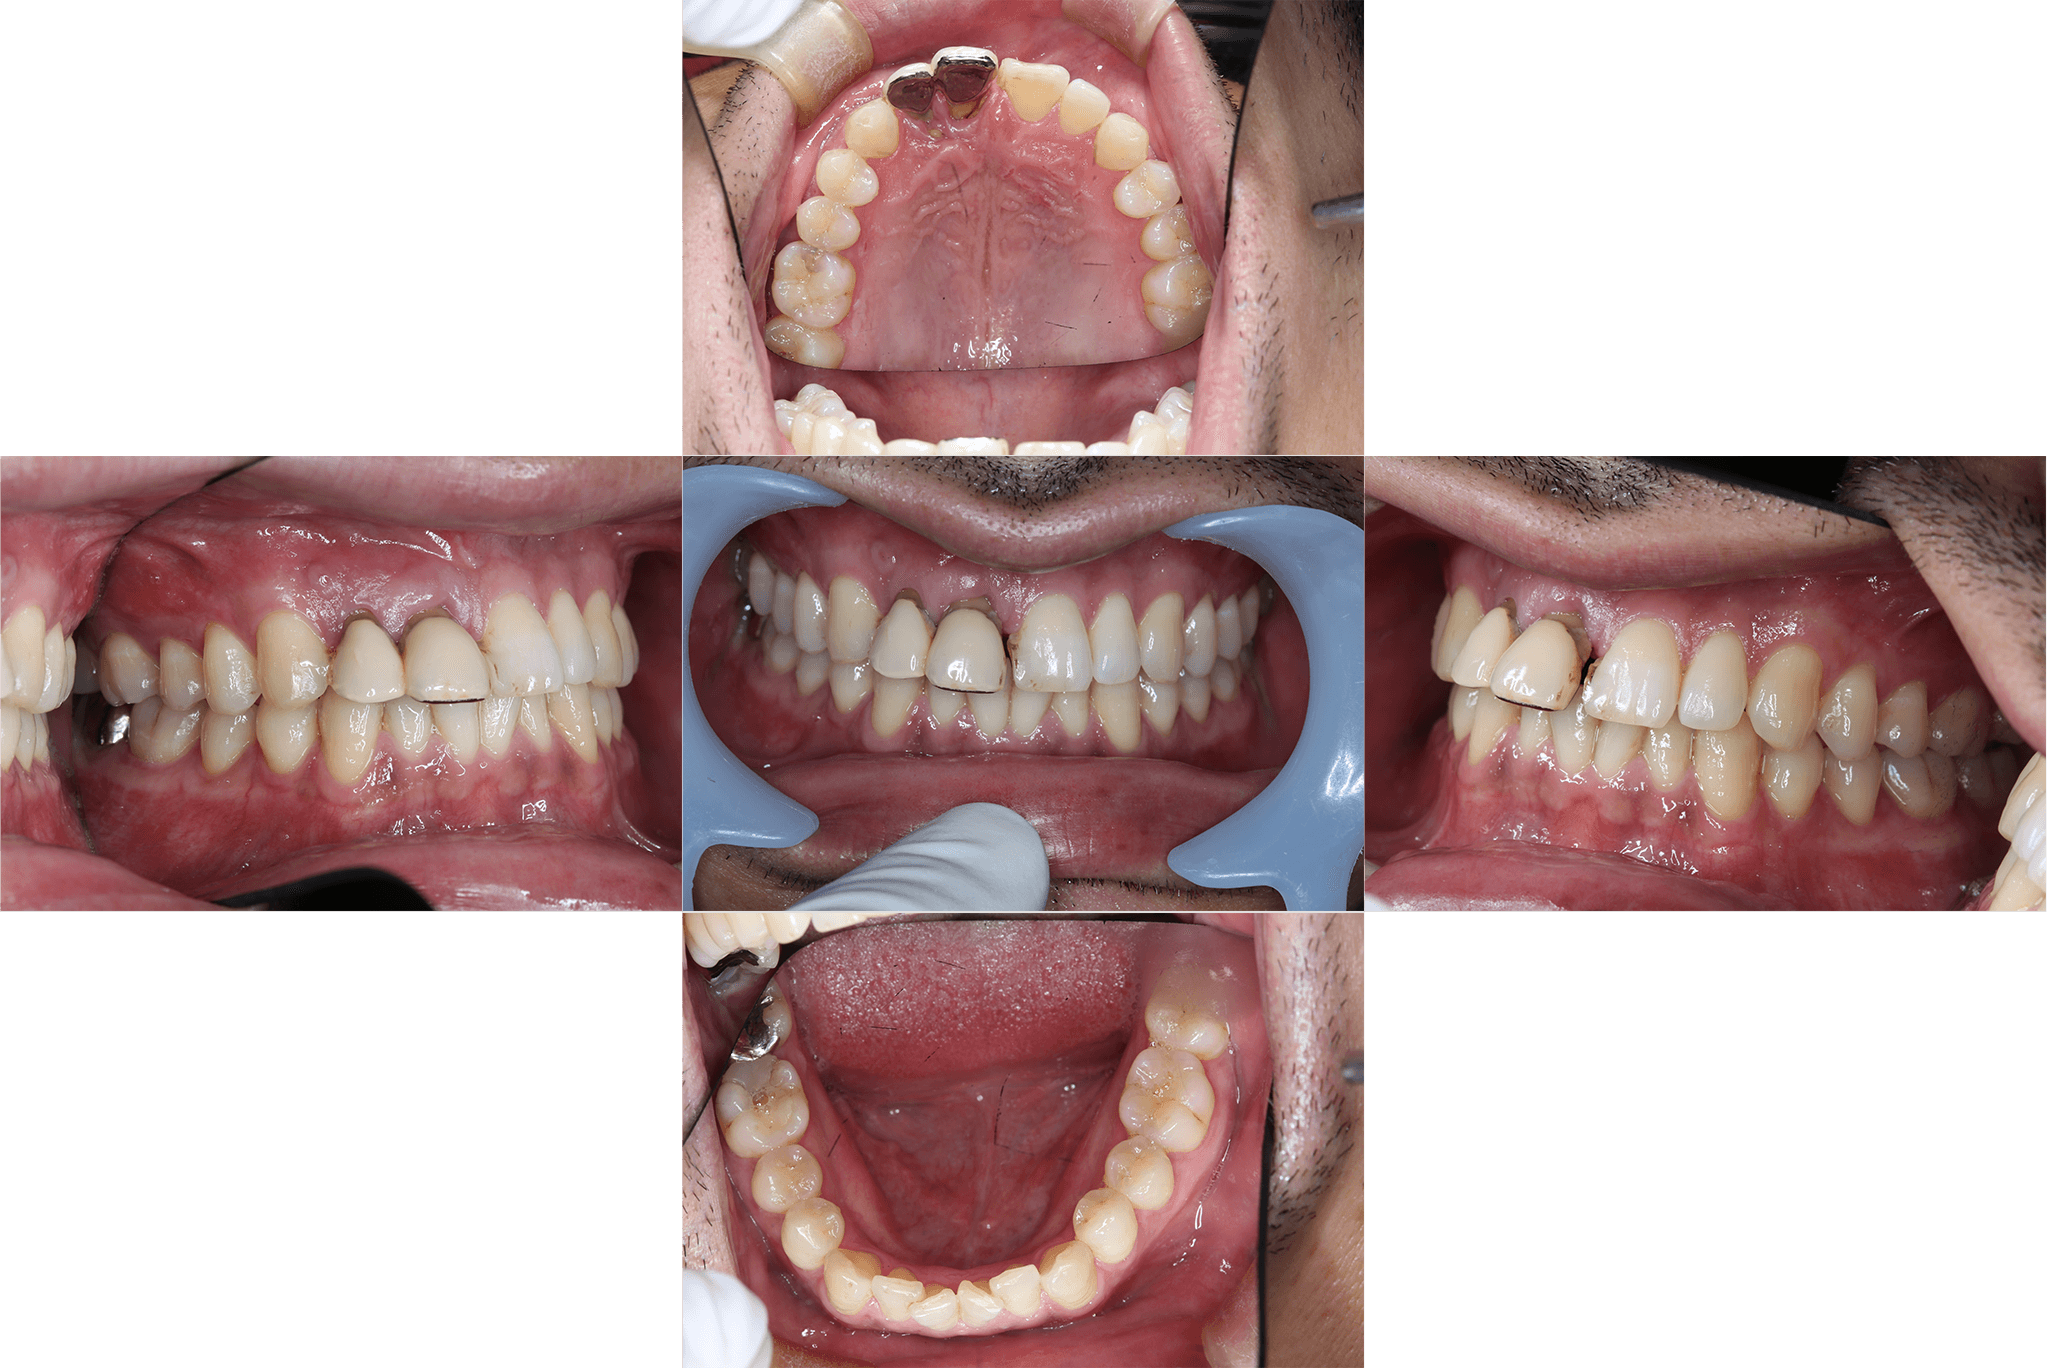 上顎前歯のインプラントによる治療抜歯後待機してから結合組織移植を併用して埋入 before